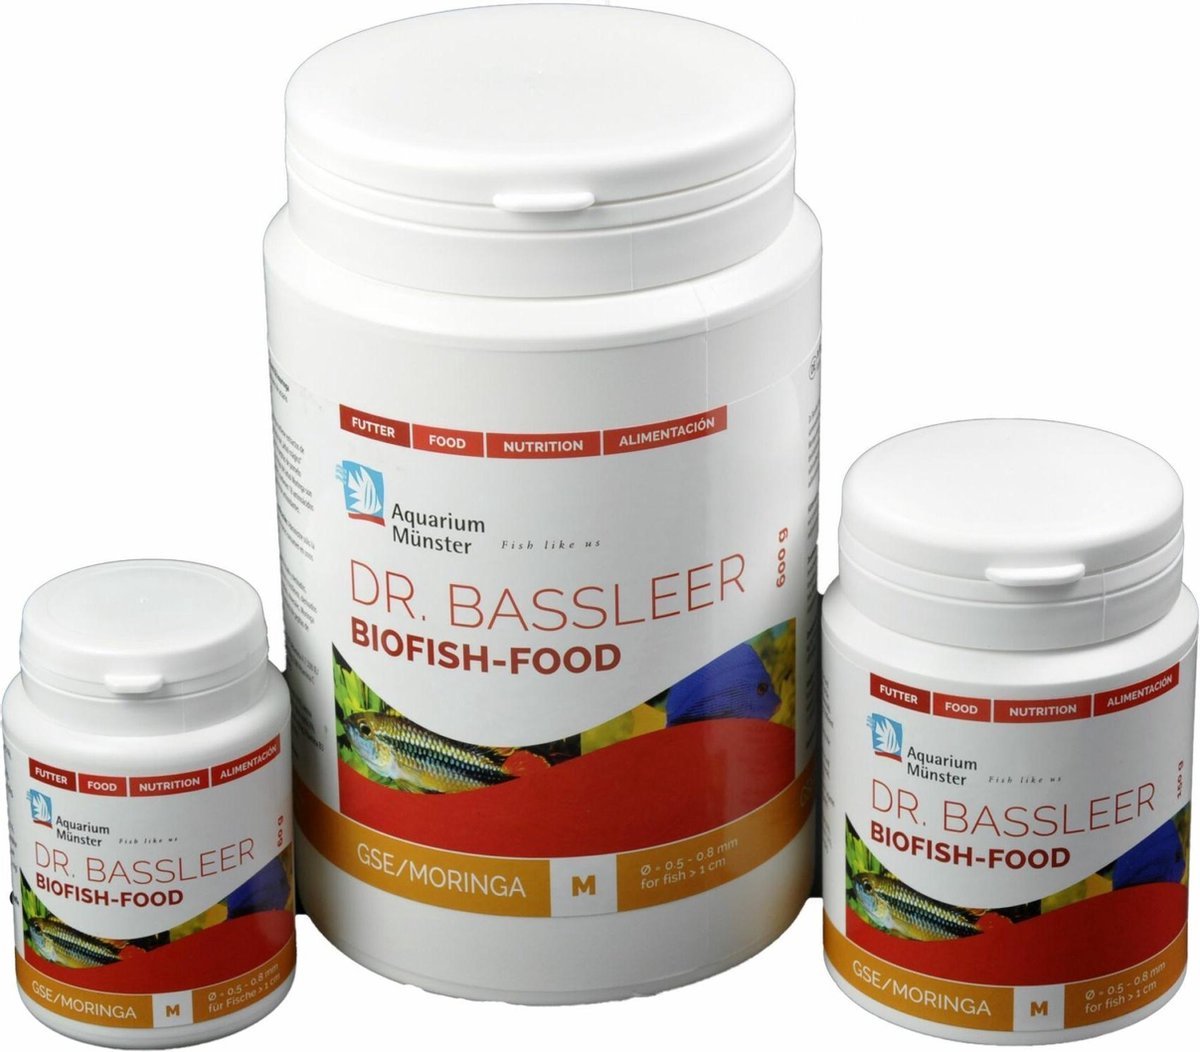 GSE/Moringa – Dr. Bassleer BioFish Food M 600gr